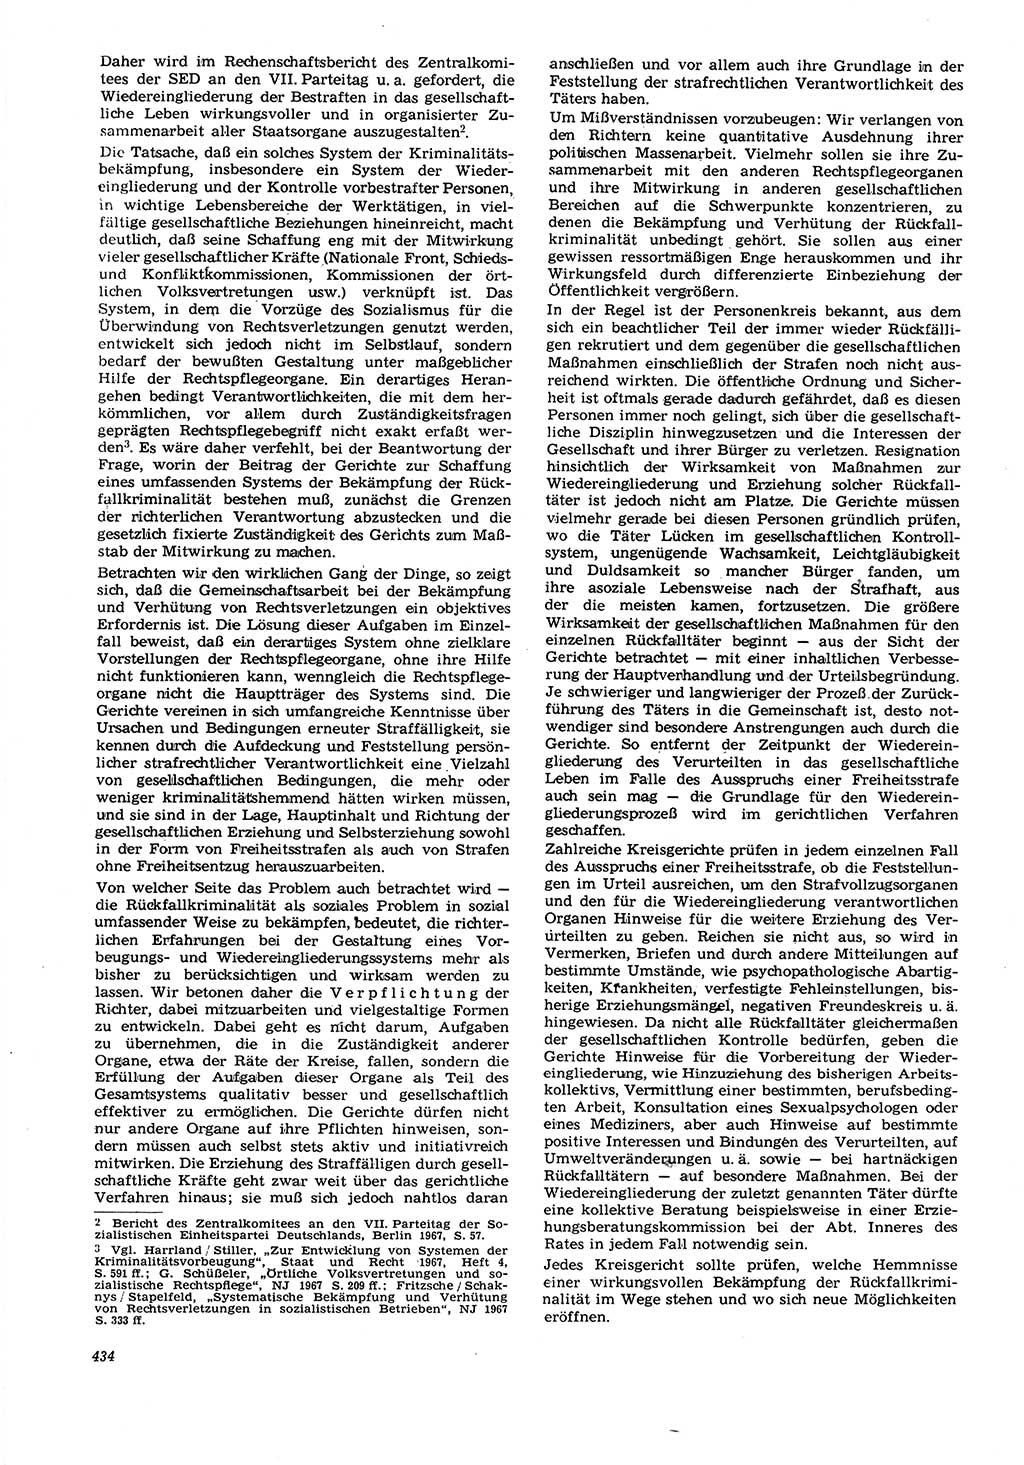 Neue Justiz (NJ), Zeitschrift für Recht und Rechtswissenschaft [Deutsche Demokratische Republik (DDR)], 21. Jahrgang 1967, Seite 434 (NJ DDR 1967, S. 434)